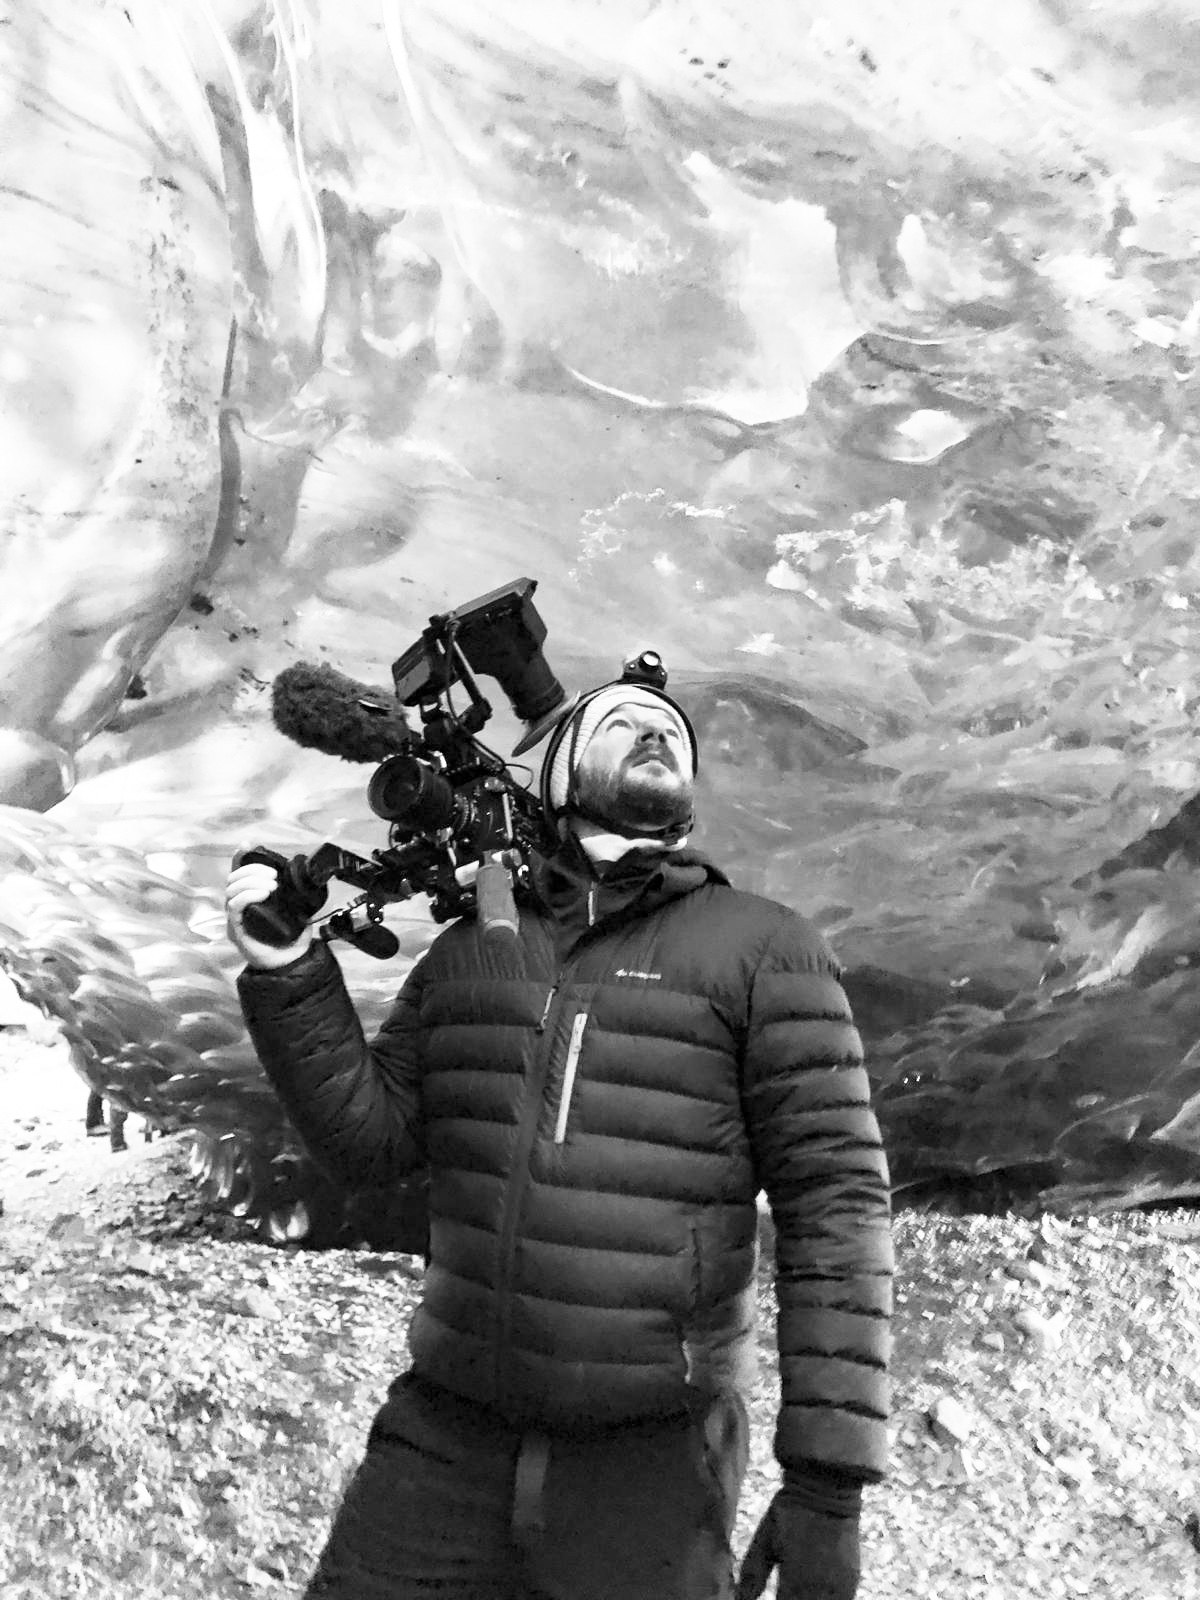 Nikolai Sevke – Director of Photography at Say Mahalo